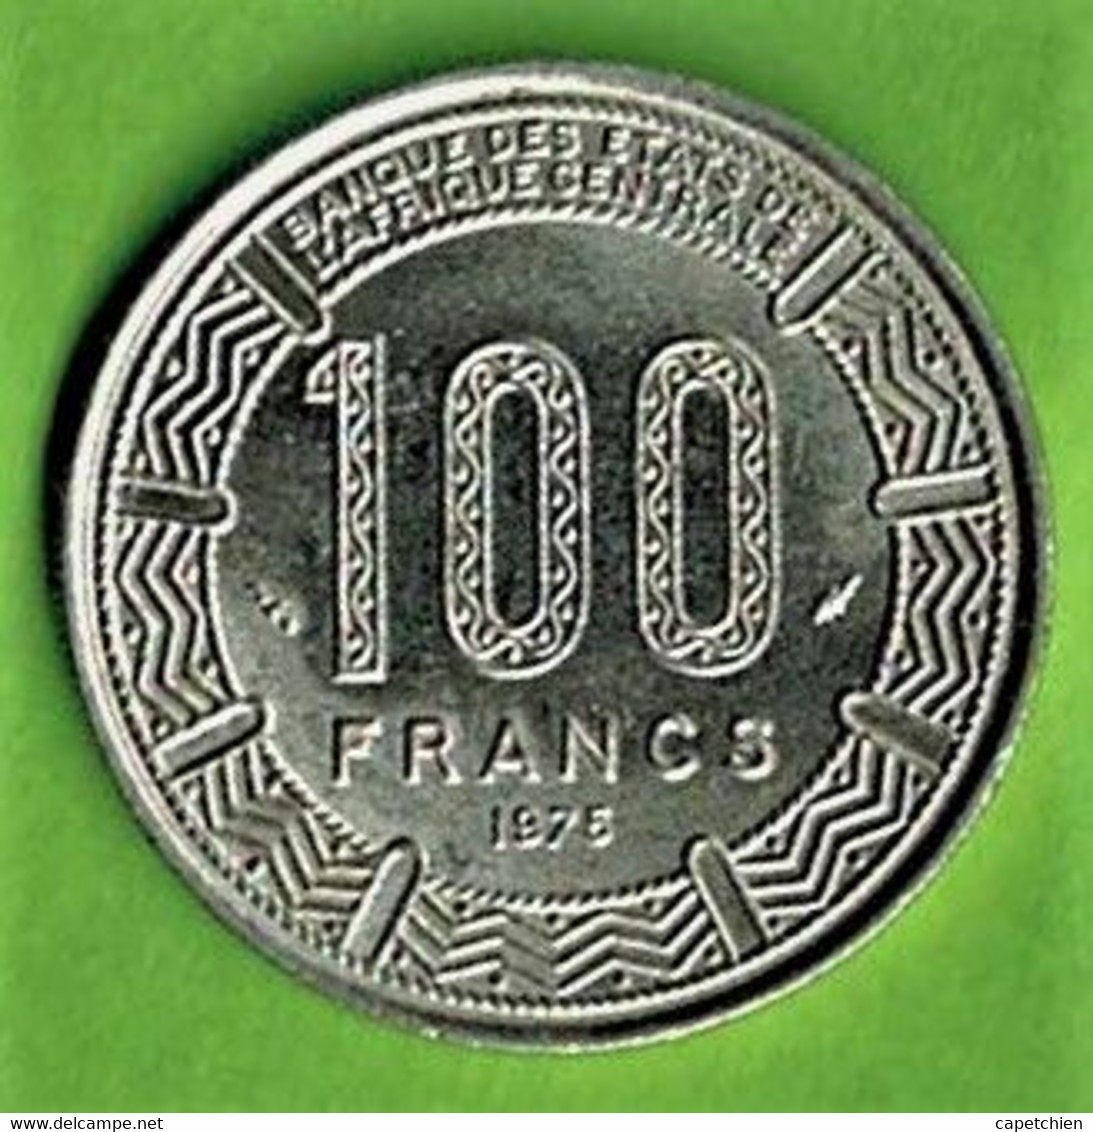 GABON / PEPUBLIQUE GABONAISE / 100 FRANCS  / 1975 / FDC - Gabon